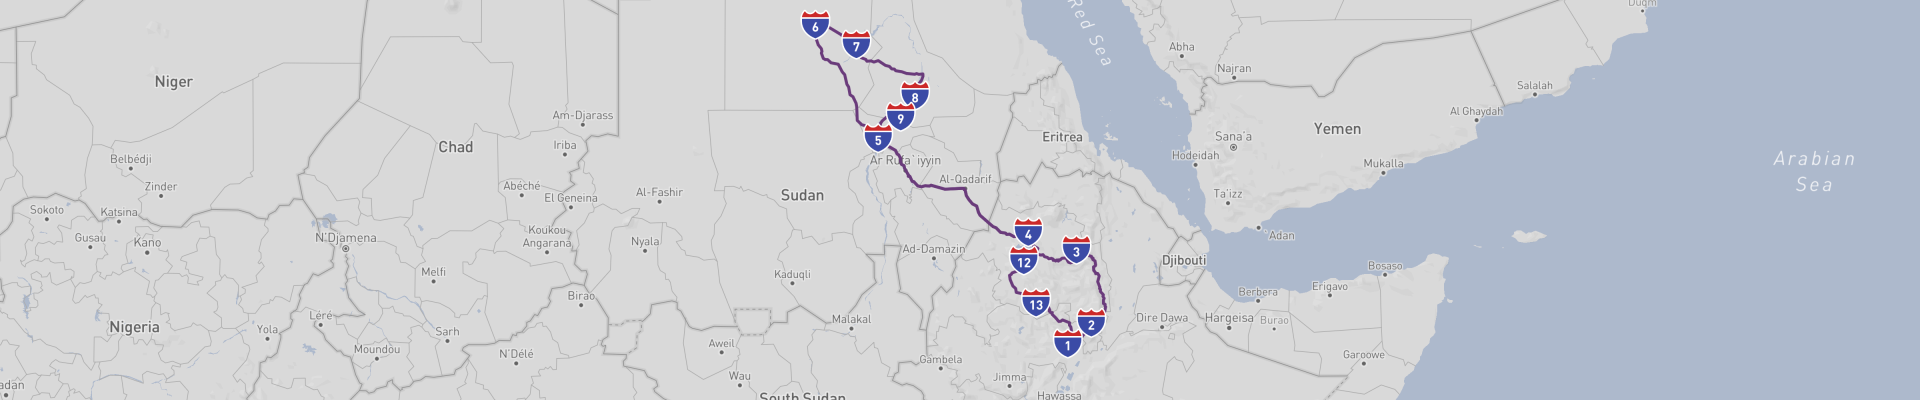 Roadtrip durch Äthiopien und Sudan